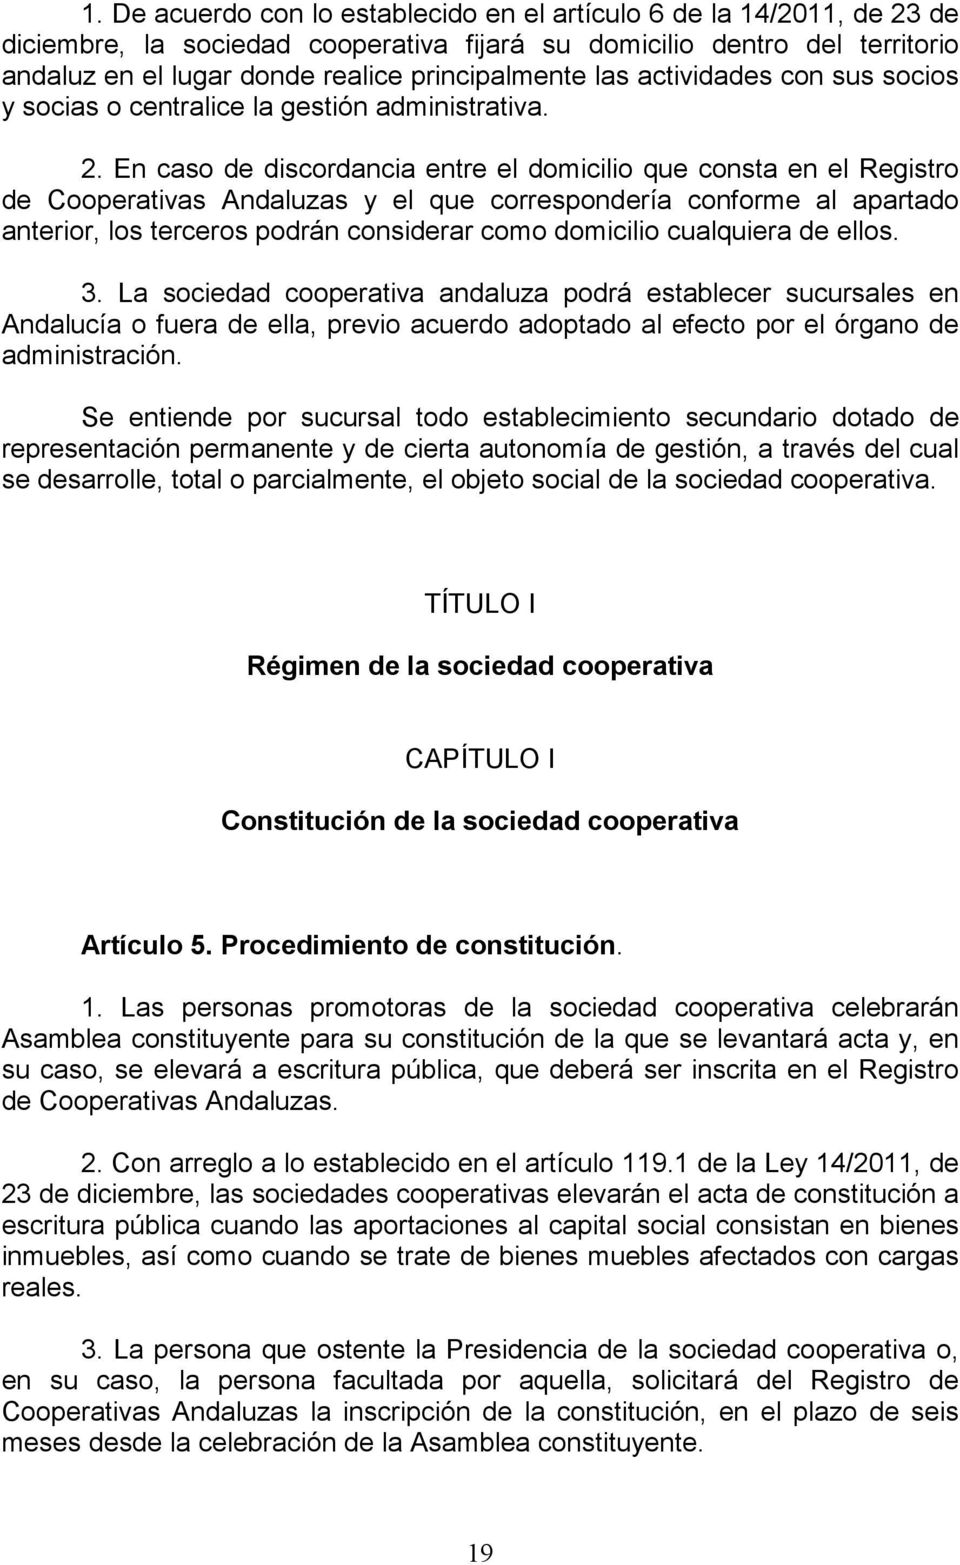 En caso de discordancia entre el domicilio que consta en el Registro de Cooperativas Andaluzas y el que correspondería conforme al apartado anterior, los terceros podrán considerar como domicilio